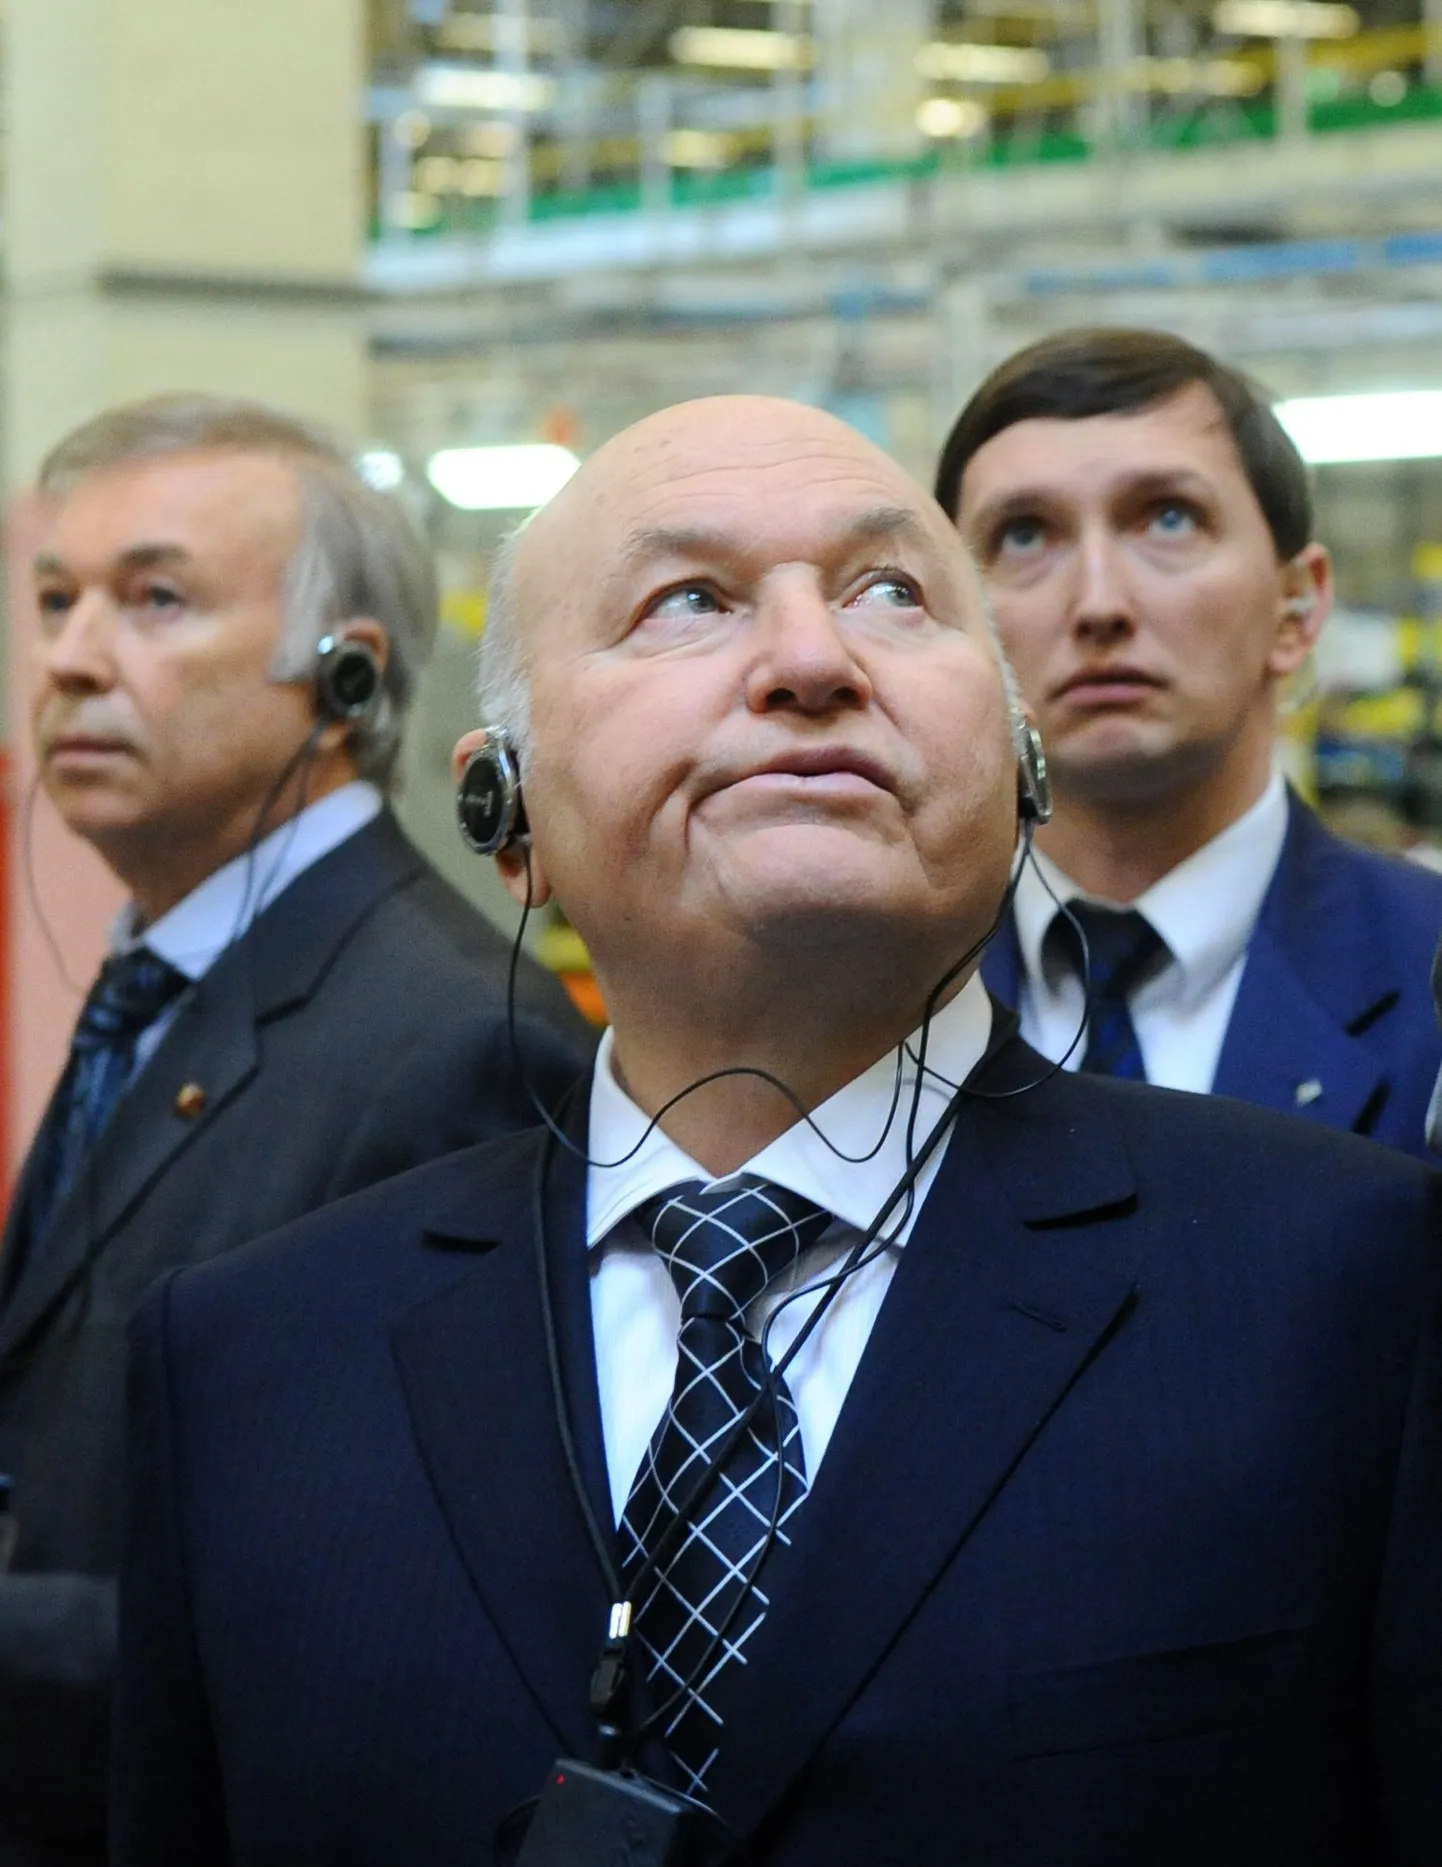 Мэр Москвы Юрий Лужков стал объектом жесткой критики со стороны телеканала НТВ.